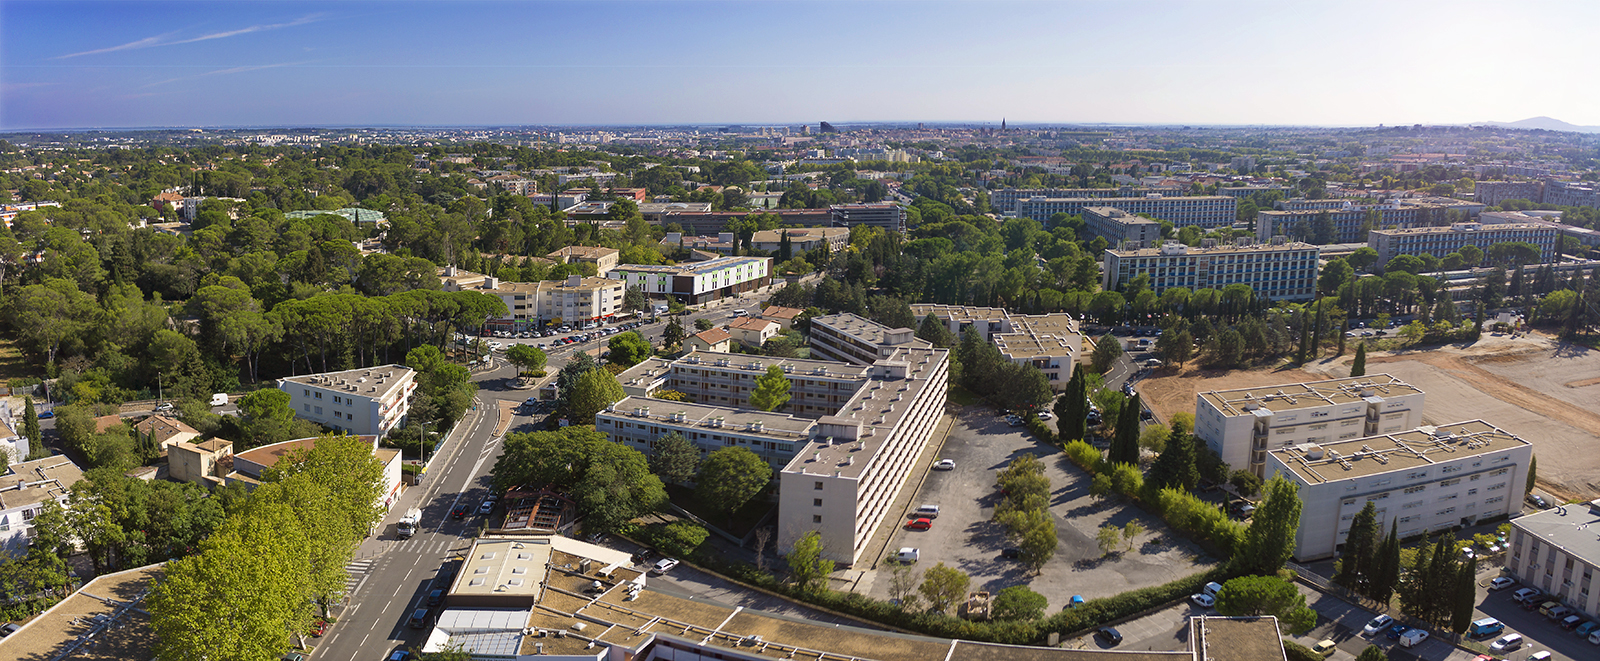 Photographie aérienne par drone présentant la rénovation de la cité étudiante Les Hirondelles à Montpellier.